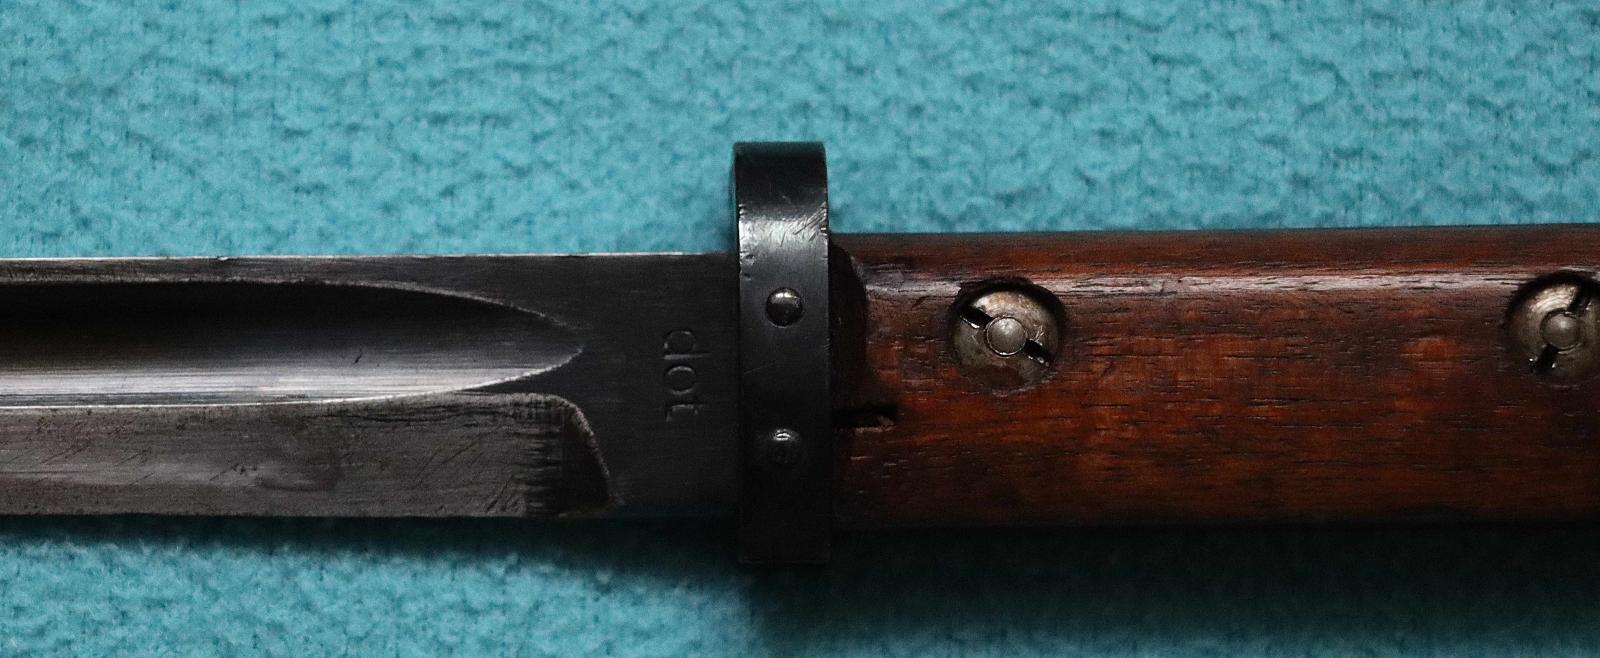 Bodák / bajonet / Mauser vz24 vz 24 vz.24 DOT 1942 luxusní! - Sběratelství